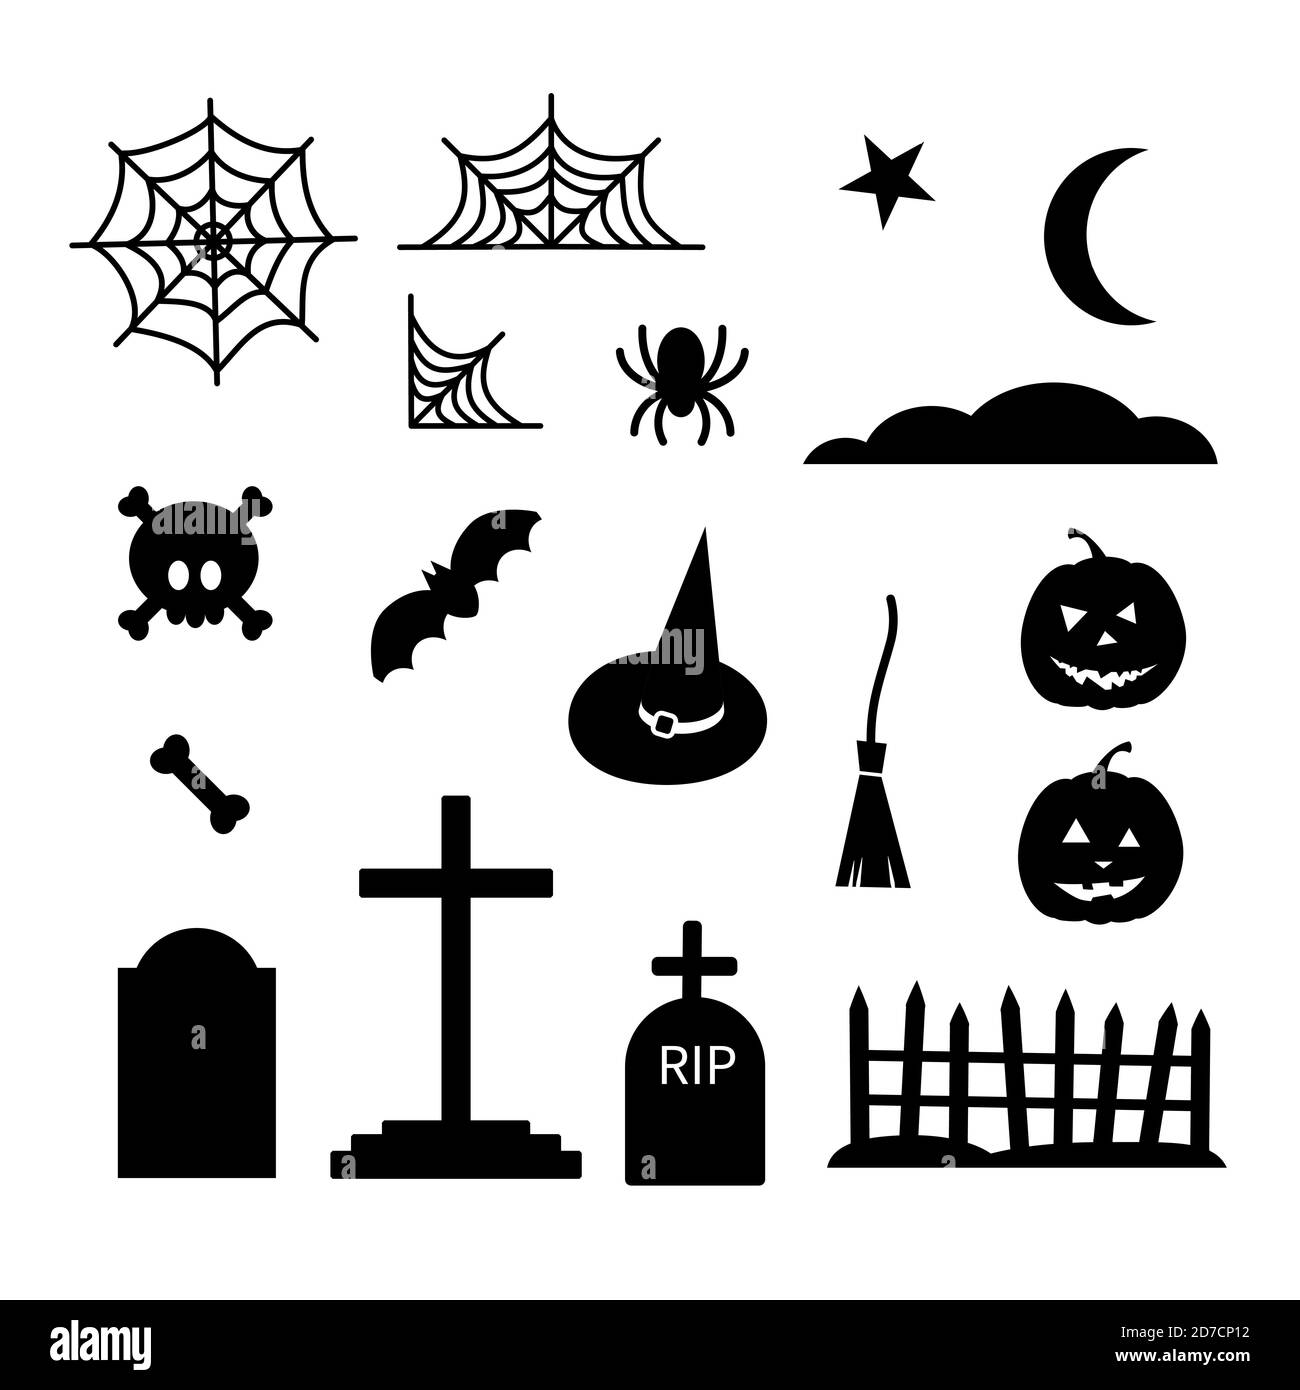 Happy Halloween black elements set - brooms, spider web, skull bones graves fence, pumpkin, moon, cloud, bat, spider, witch hat. Stock vector Stock Vector